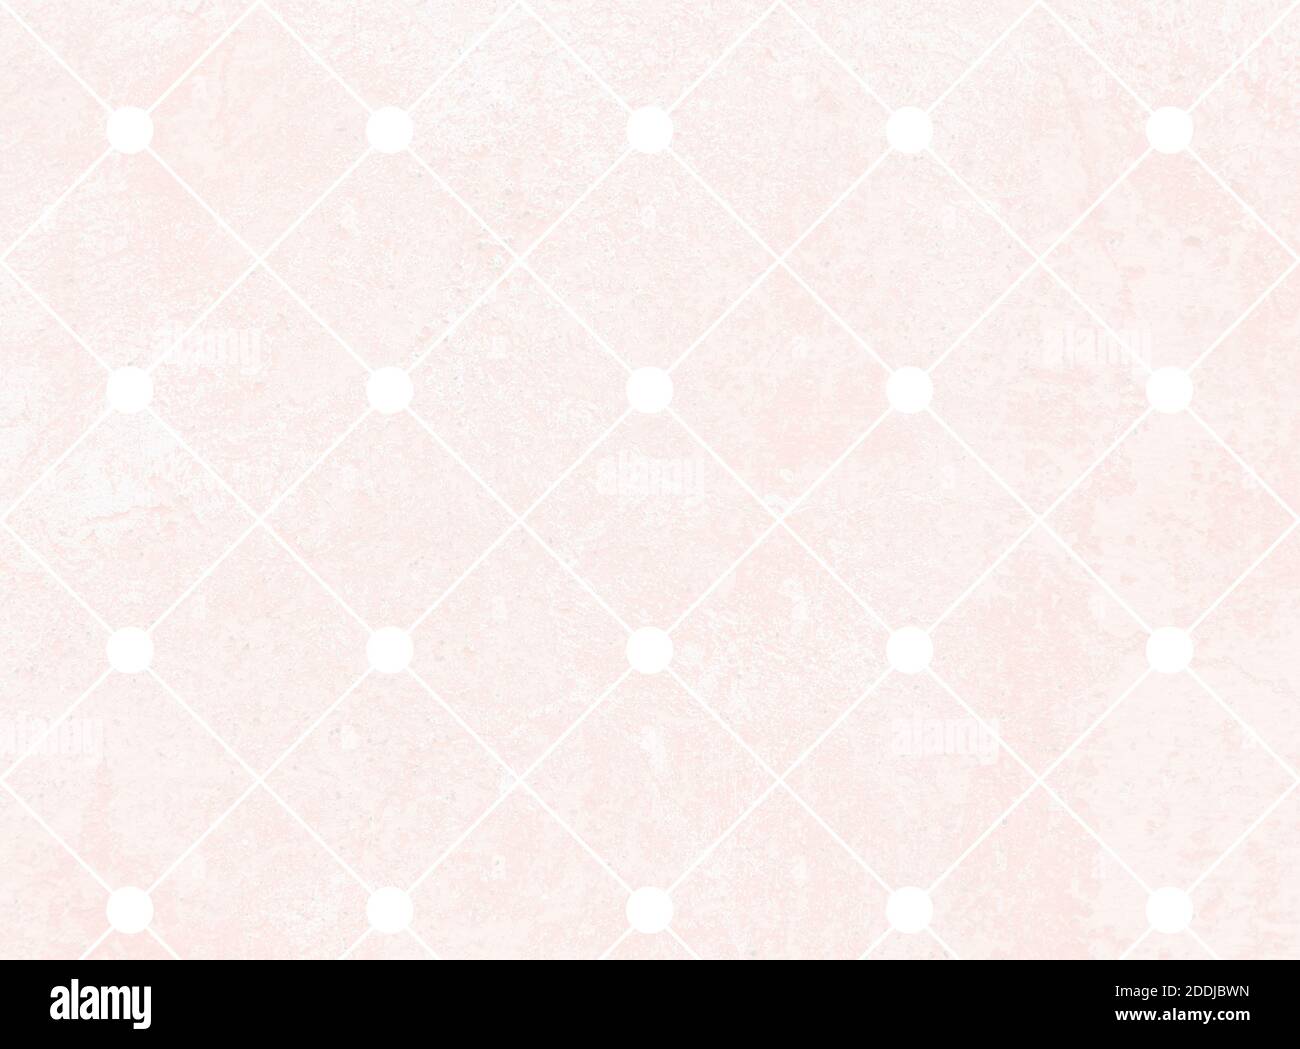 Griglia quadrata inclinata o a rombo realizzata con linee diagonali bianche su parete di cemento rosa chiaro invecchiato. Sfondo con texture full frame ad alta risoluzione. Foto Stock